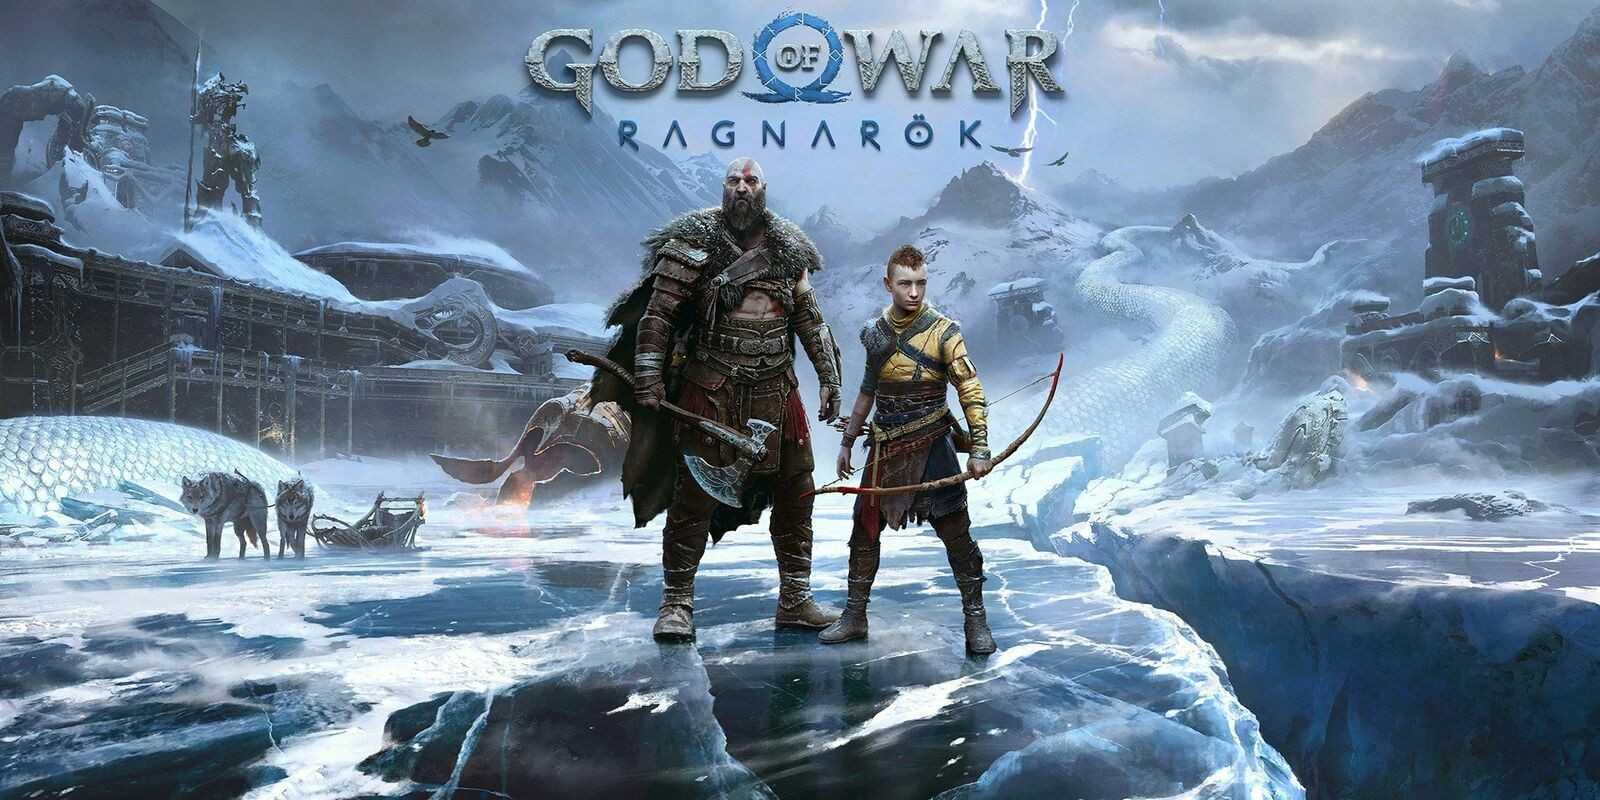 Kratos-skuespiller Christopher Judges løn kan forstyrre fans på trods af God of War: Ragnarok sælger over 11 millioner eksemplarer på verdensplan